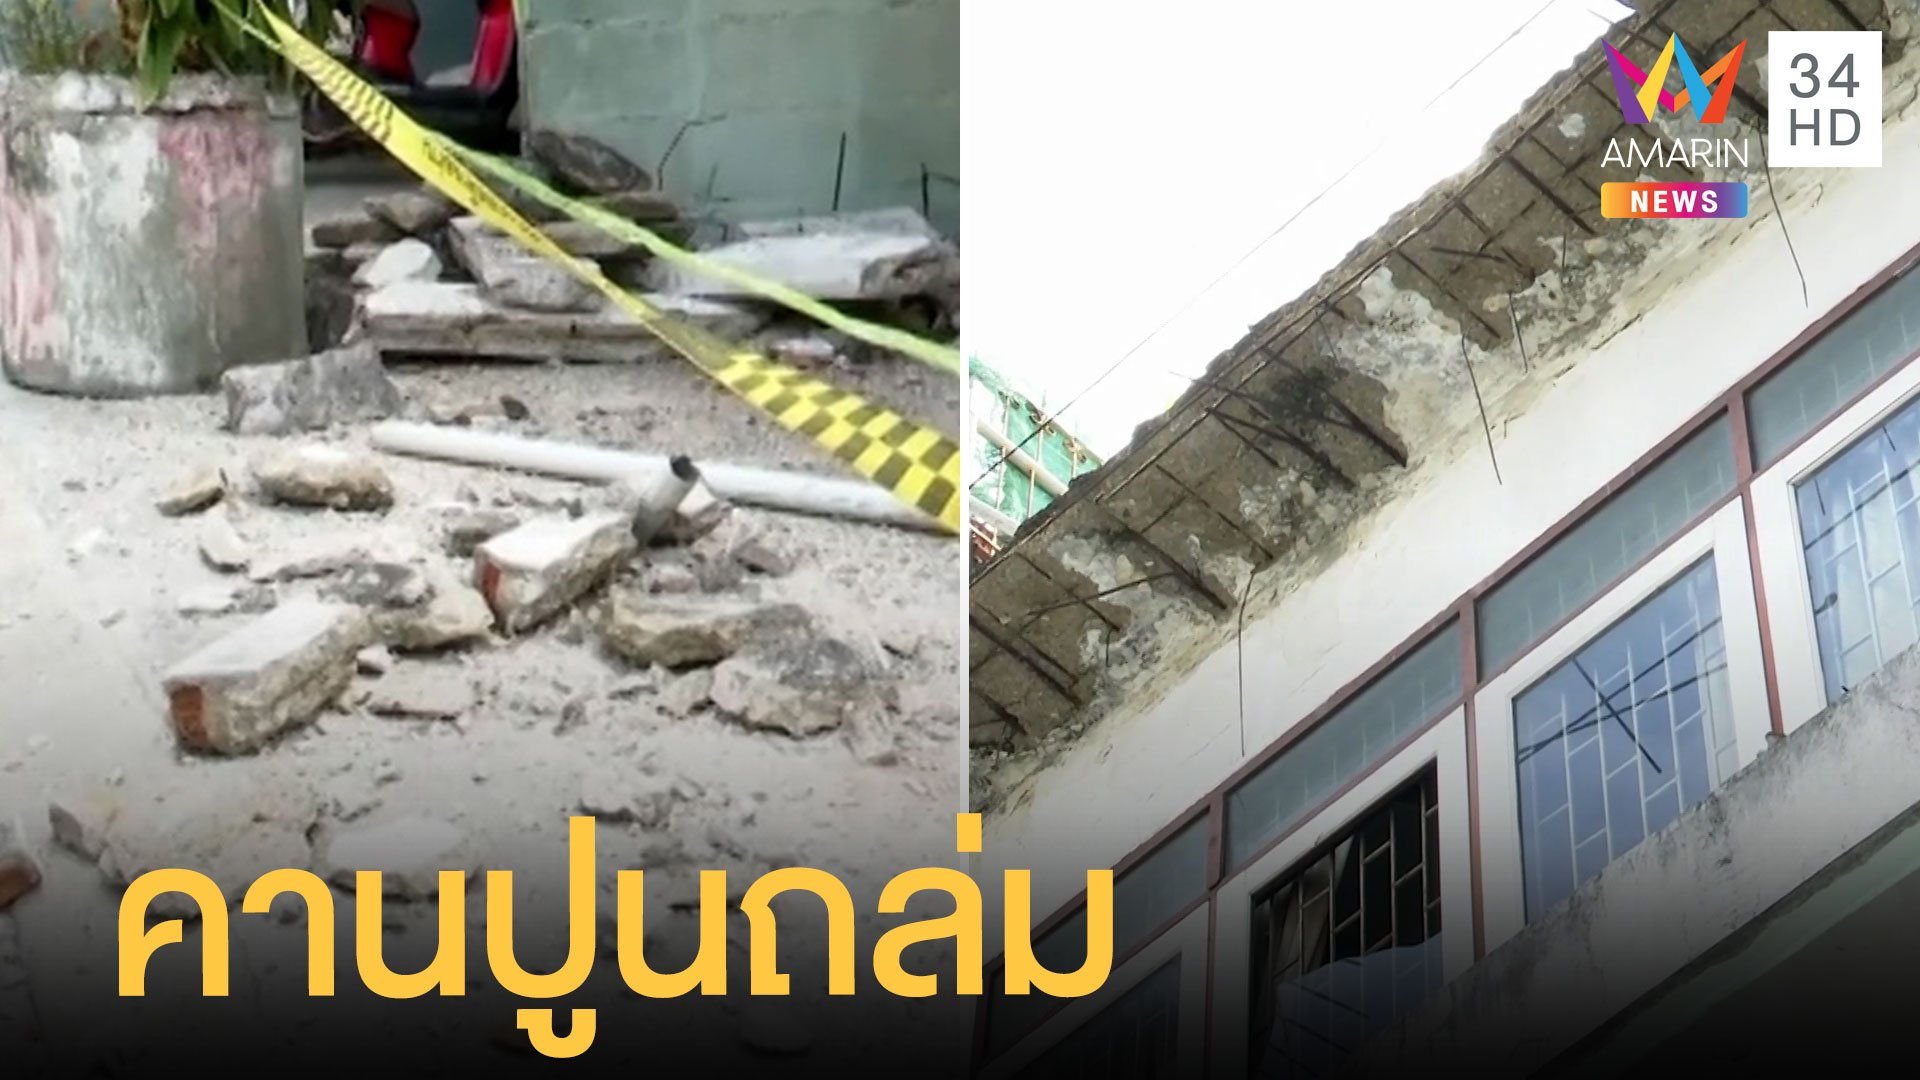 ชาวบ้านหนีตาย คานปูนตึกแถวถล่ม ฝนตกหวั่นอันตราย | ข่าวเที่ยงอมรินทร์ | 29 พ.ค. 65 | AMARIN TVHD34